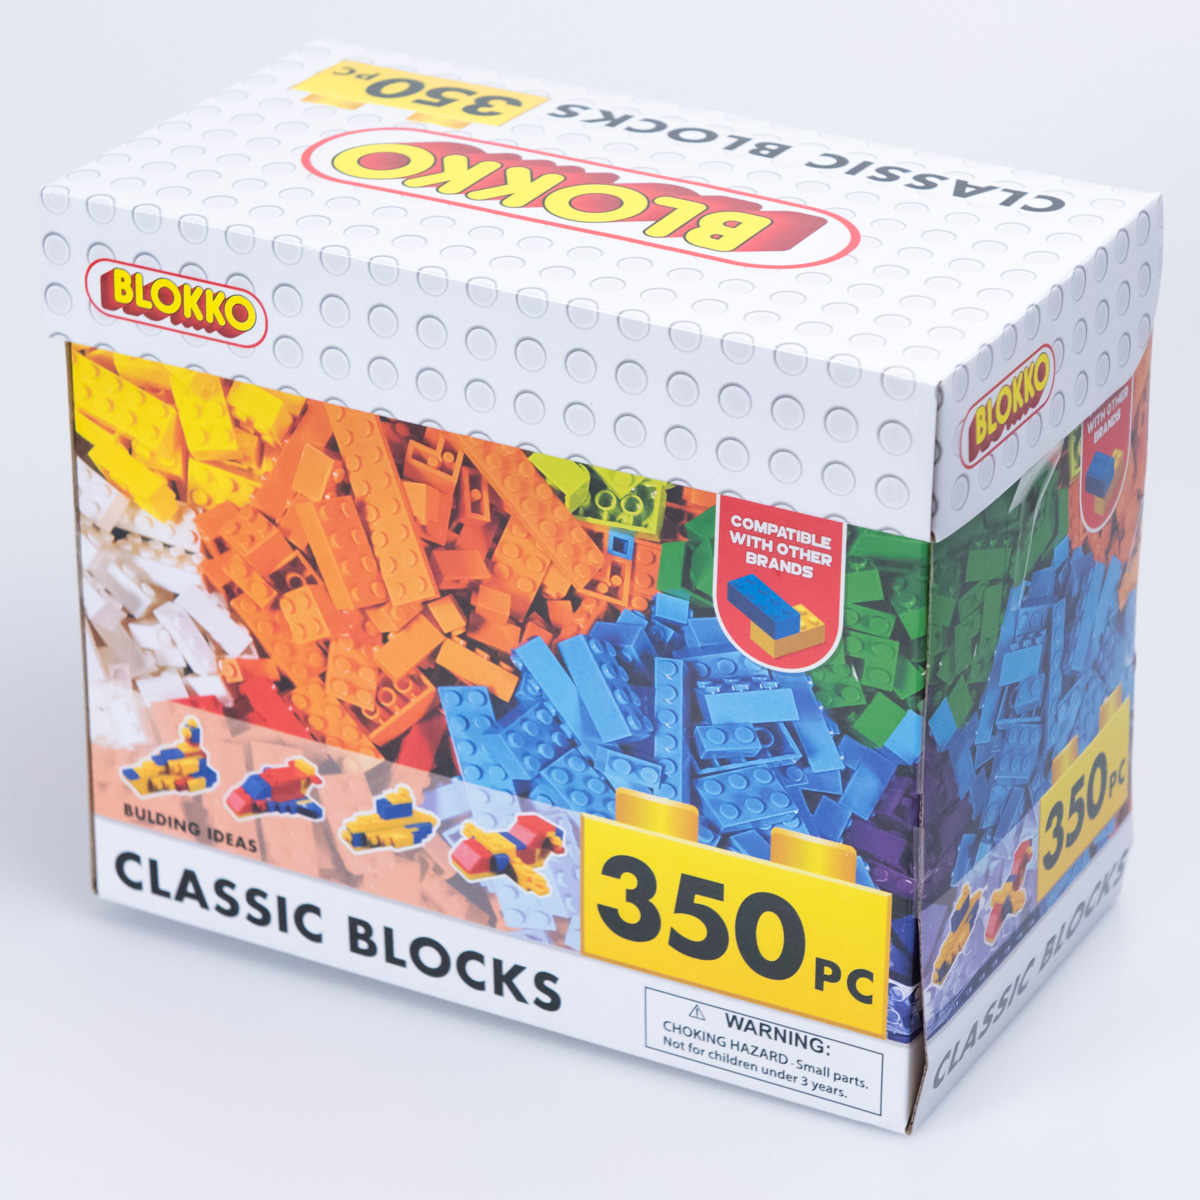 Details about   800 PC Classic Block Set Blokko